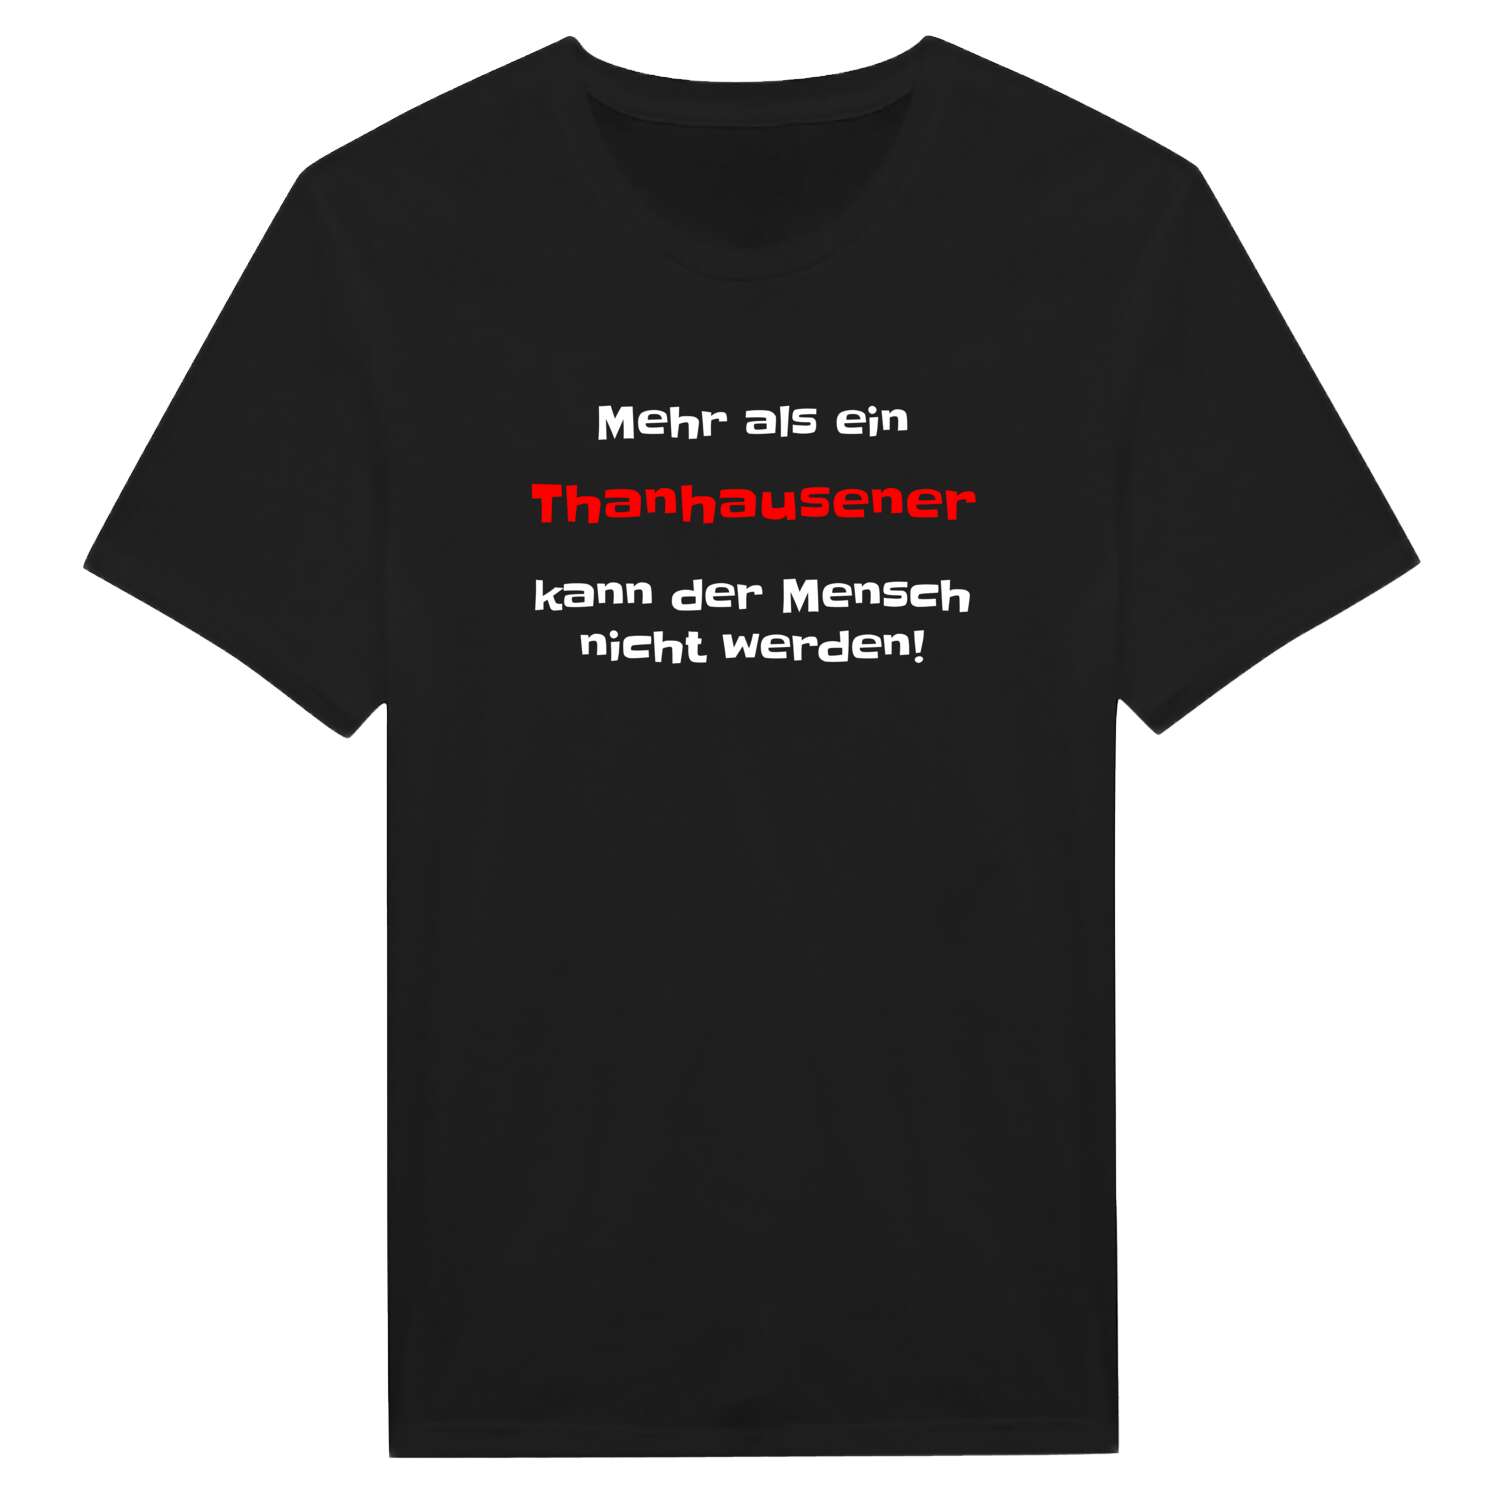 Thanhausen T-Shirt »Mehr als ein«